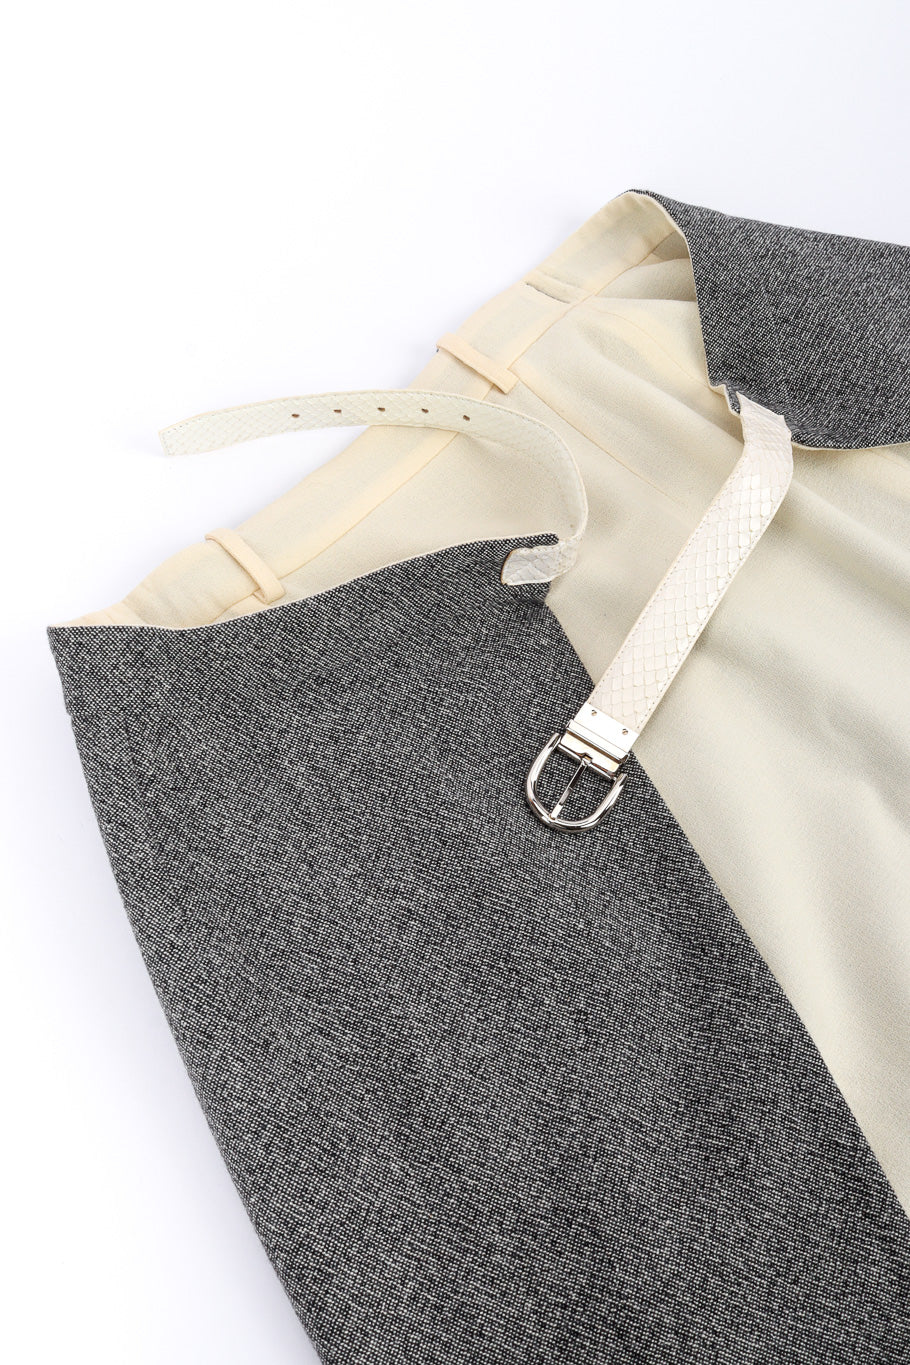 Wool Jacket & Wrap Skirt Suit by Christian Dior skirt waist @recessla